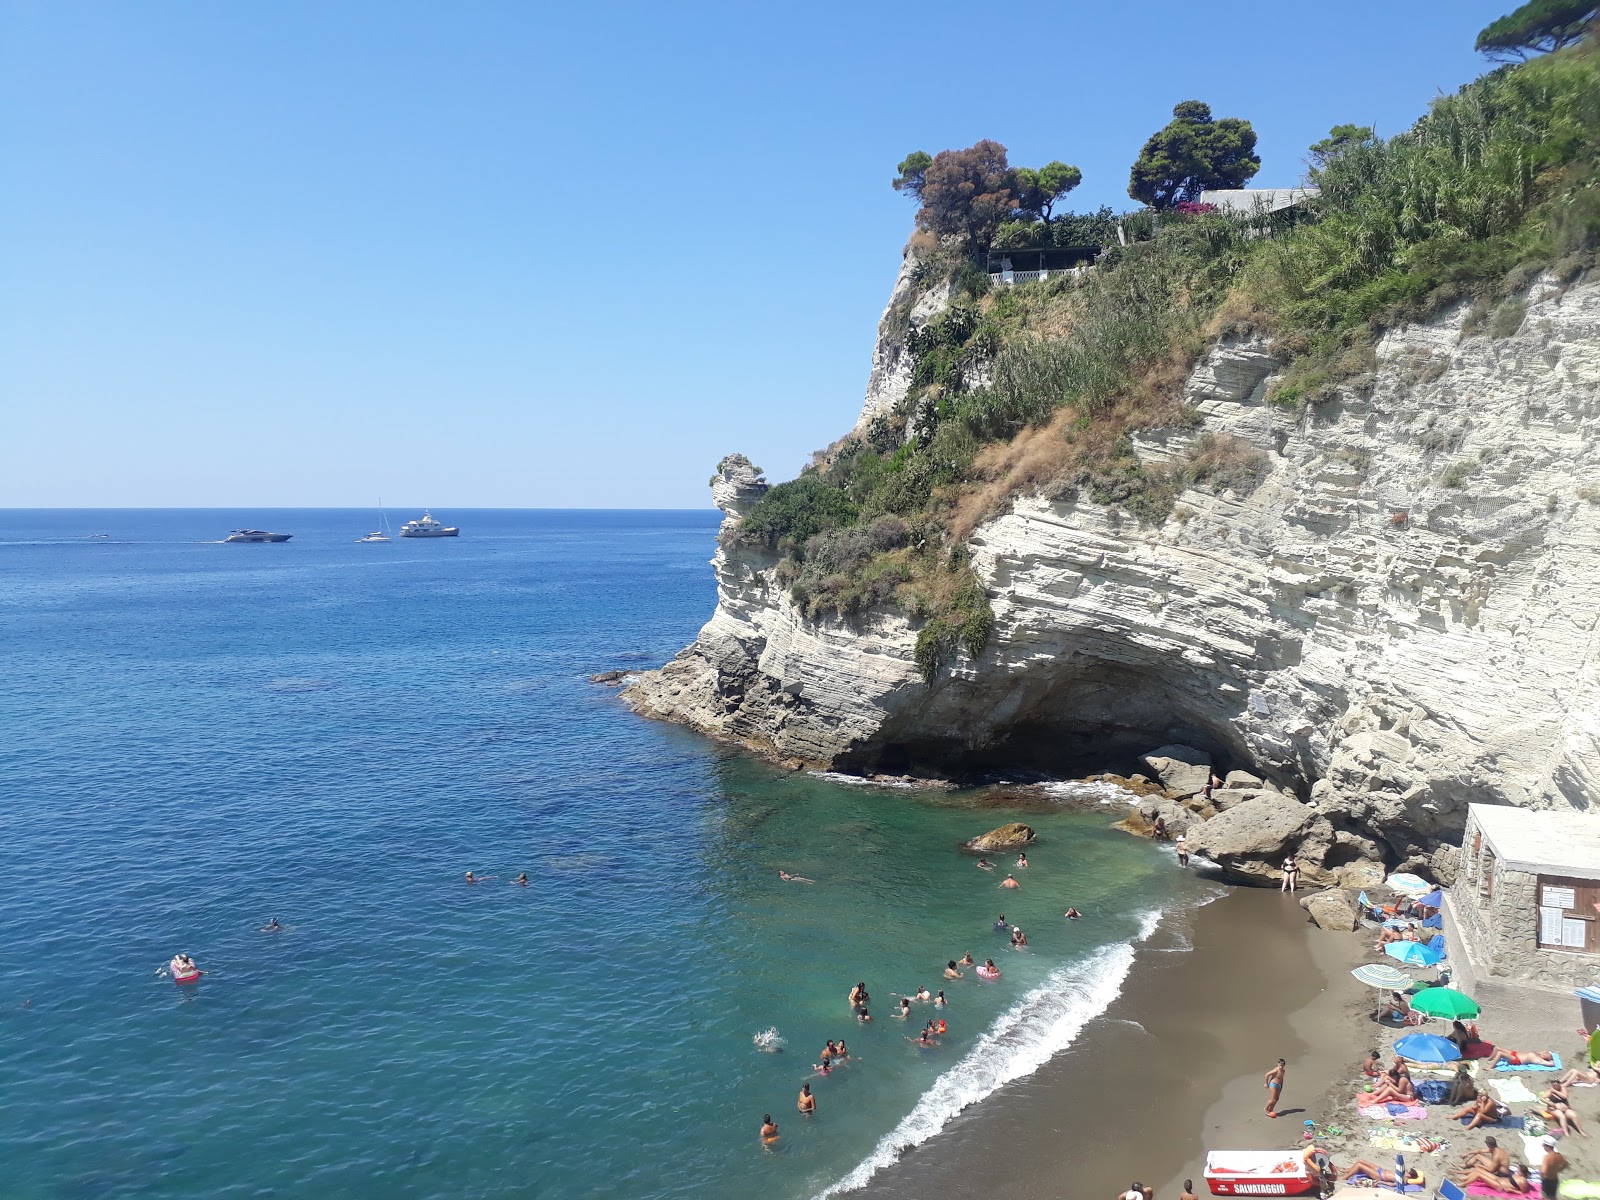 Photo of Spiaggia di Cava Grado with gray fine pebble surface